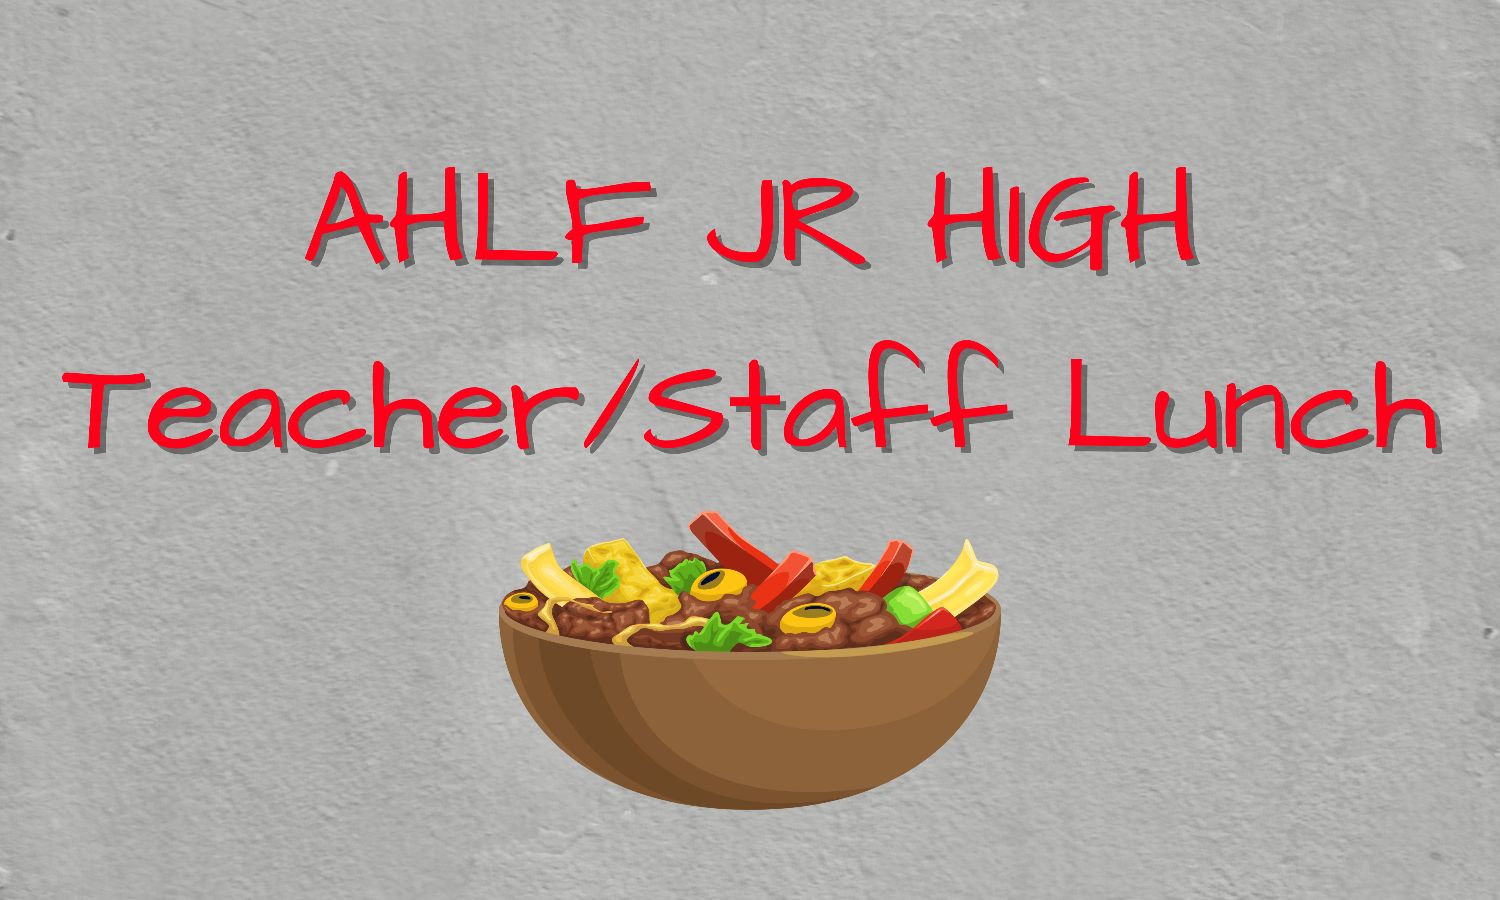 Ahlf Jr. High Teacher Lunch